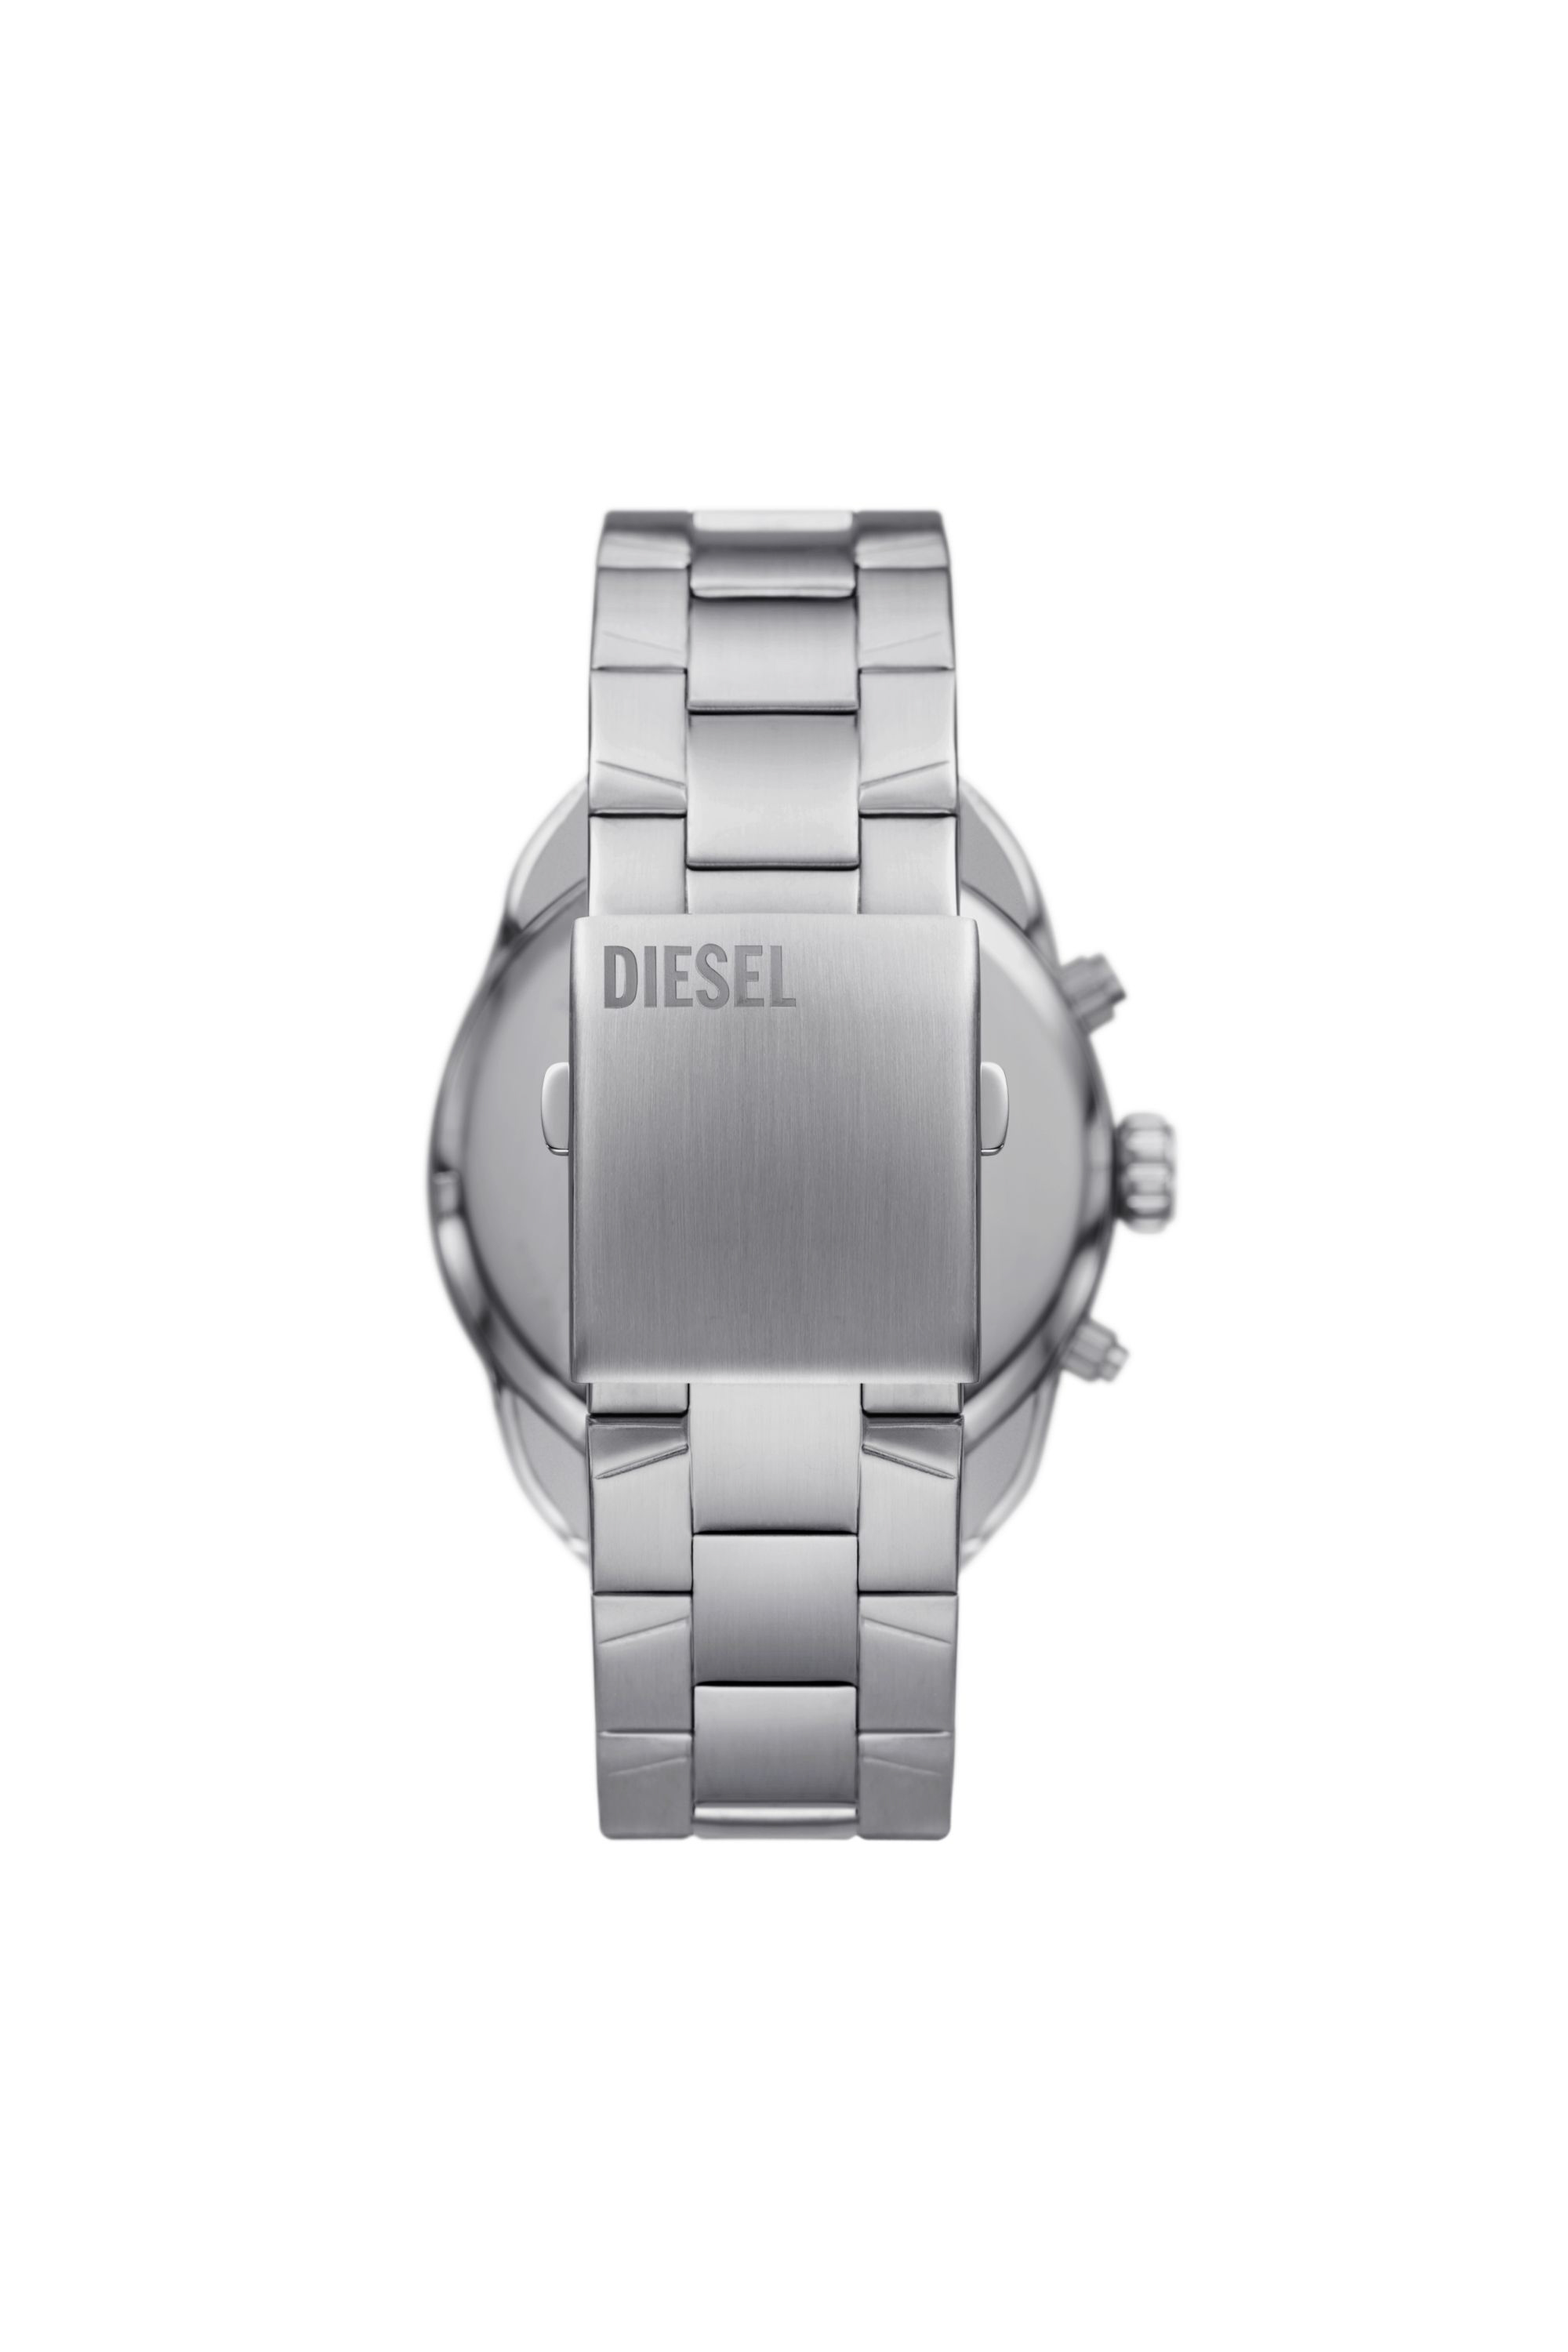 Diesel - DZ4655, Silver - Image 2